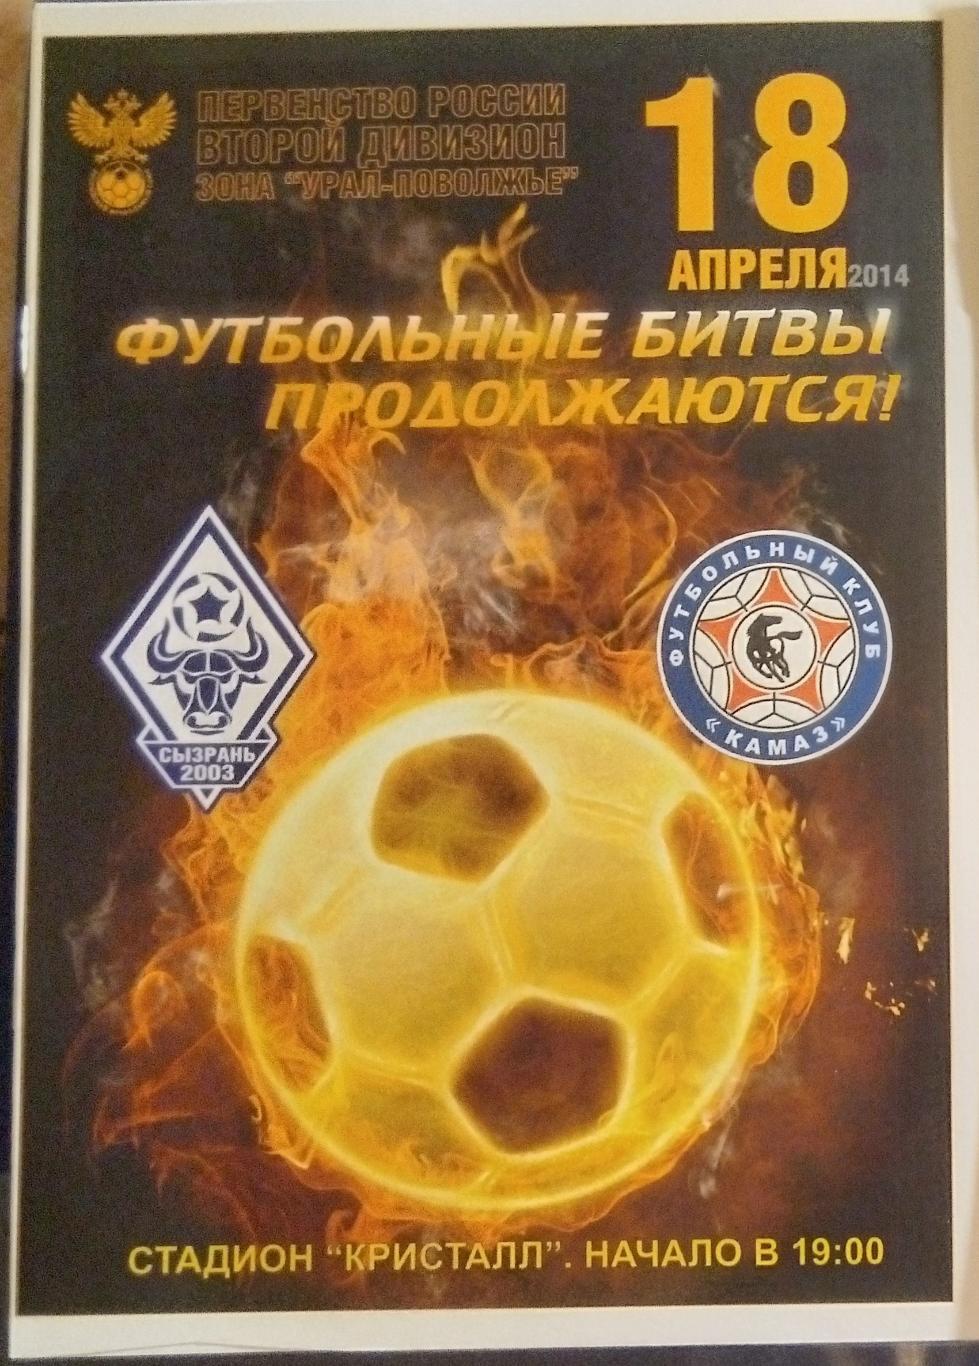 Сызрань-2003 - ФК КамАЗ- 2013/2014